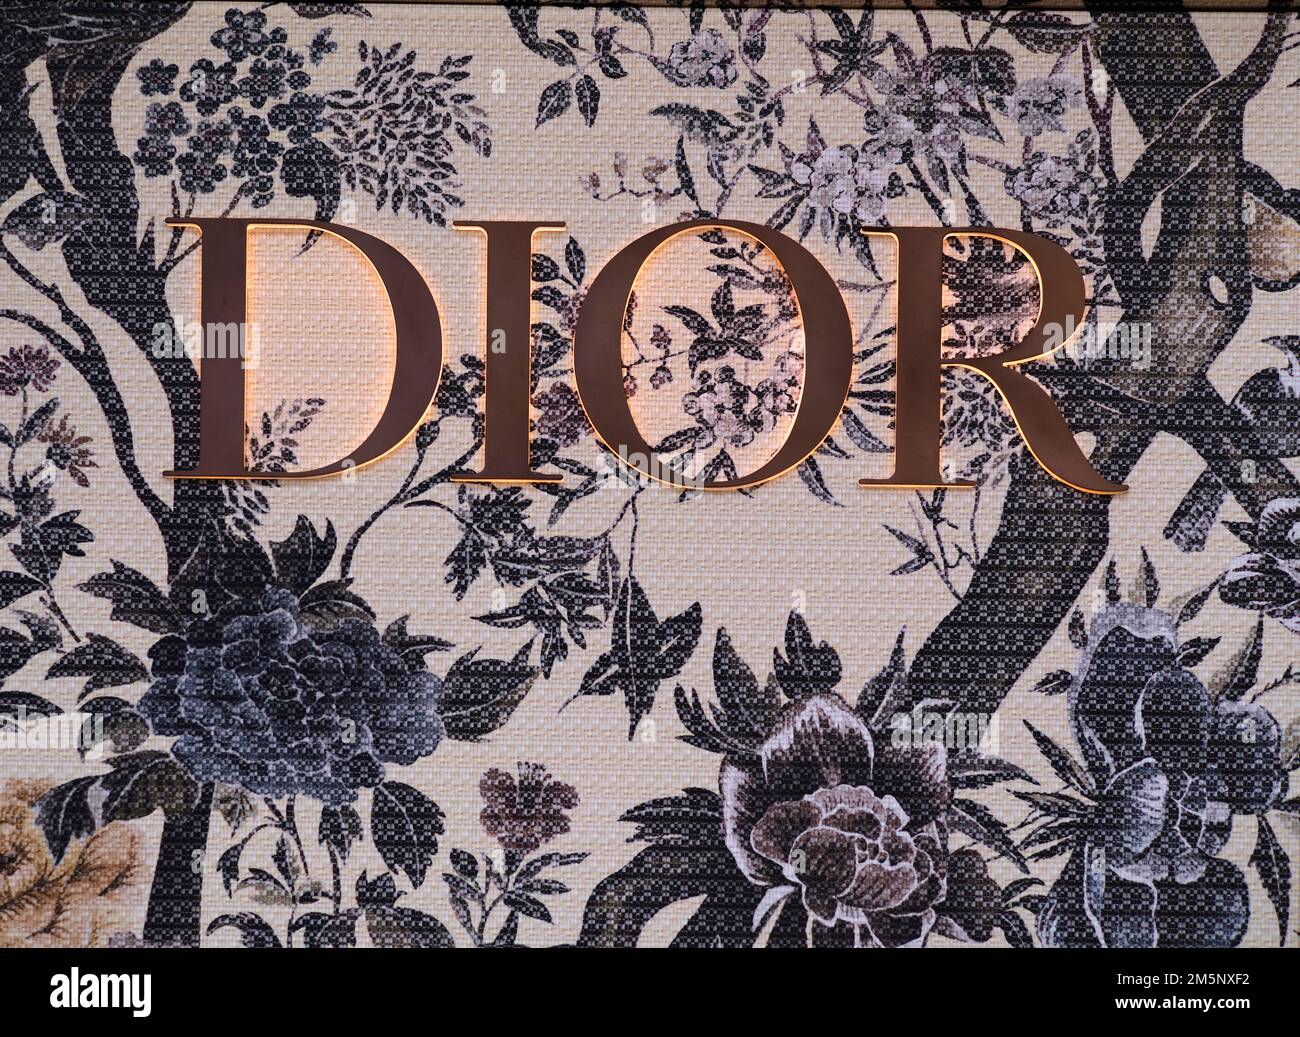 Dior est la marque de LVMH qui a généré le plus de revenus grâce aux  influenceurs sur Instagram en 2022  Influencia